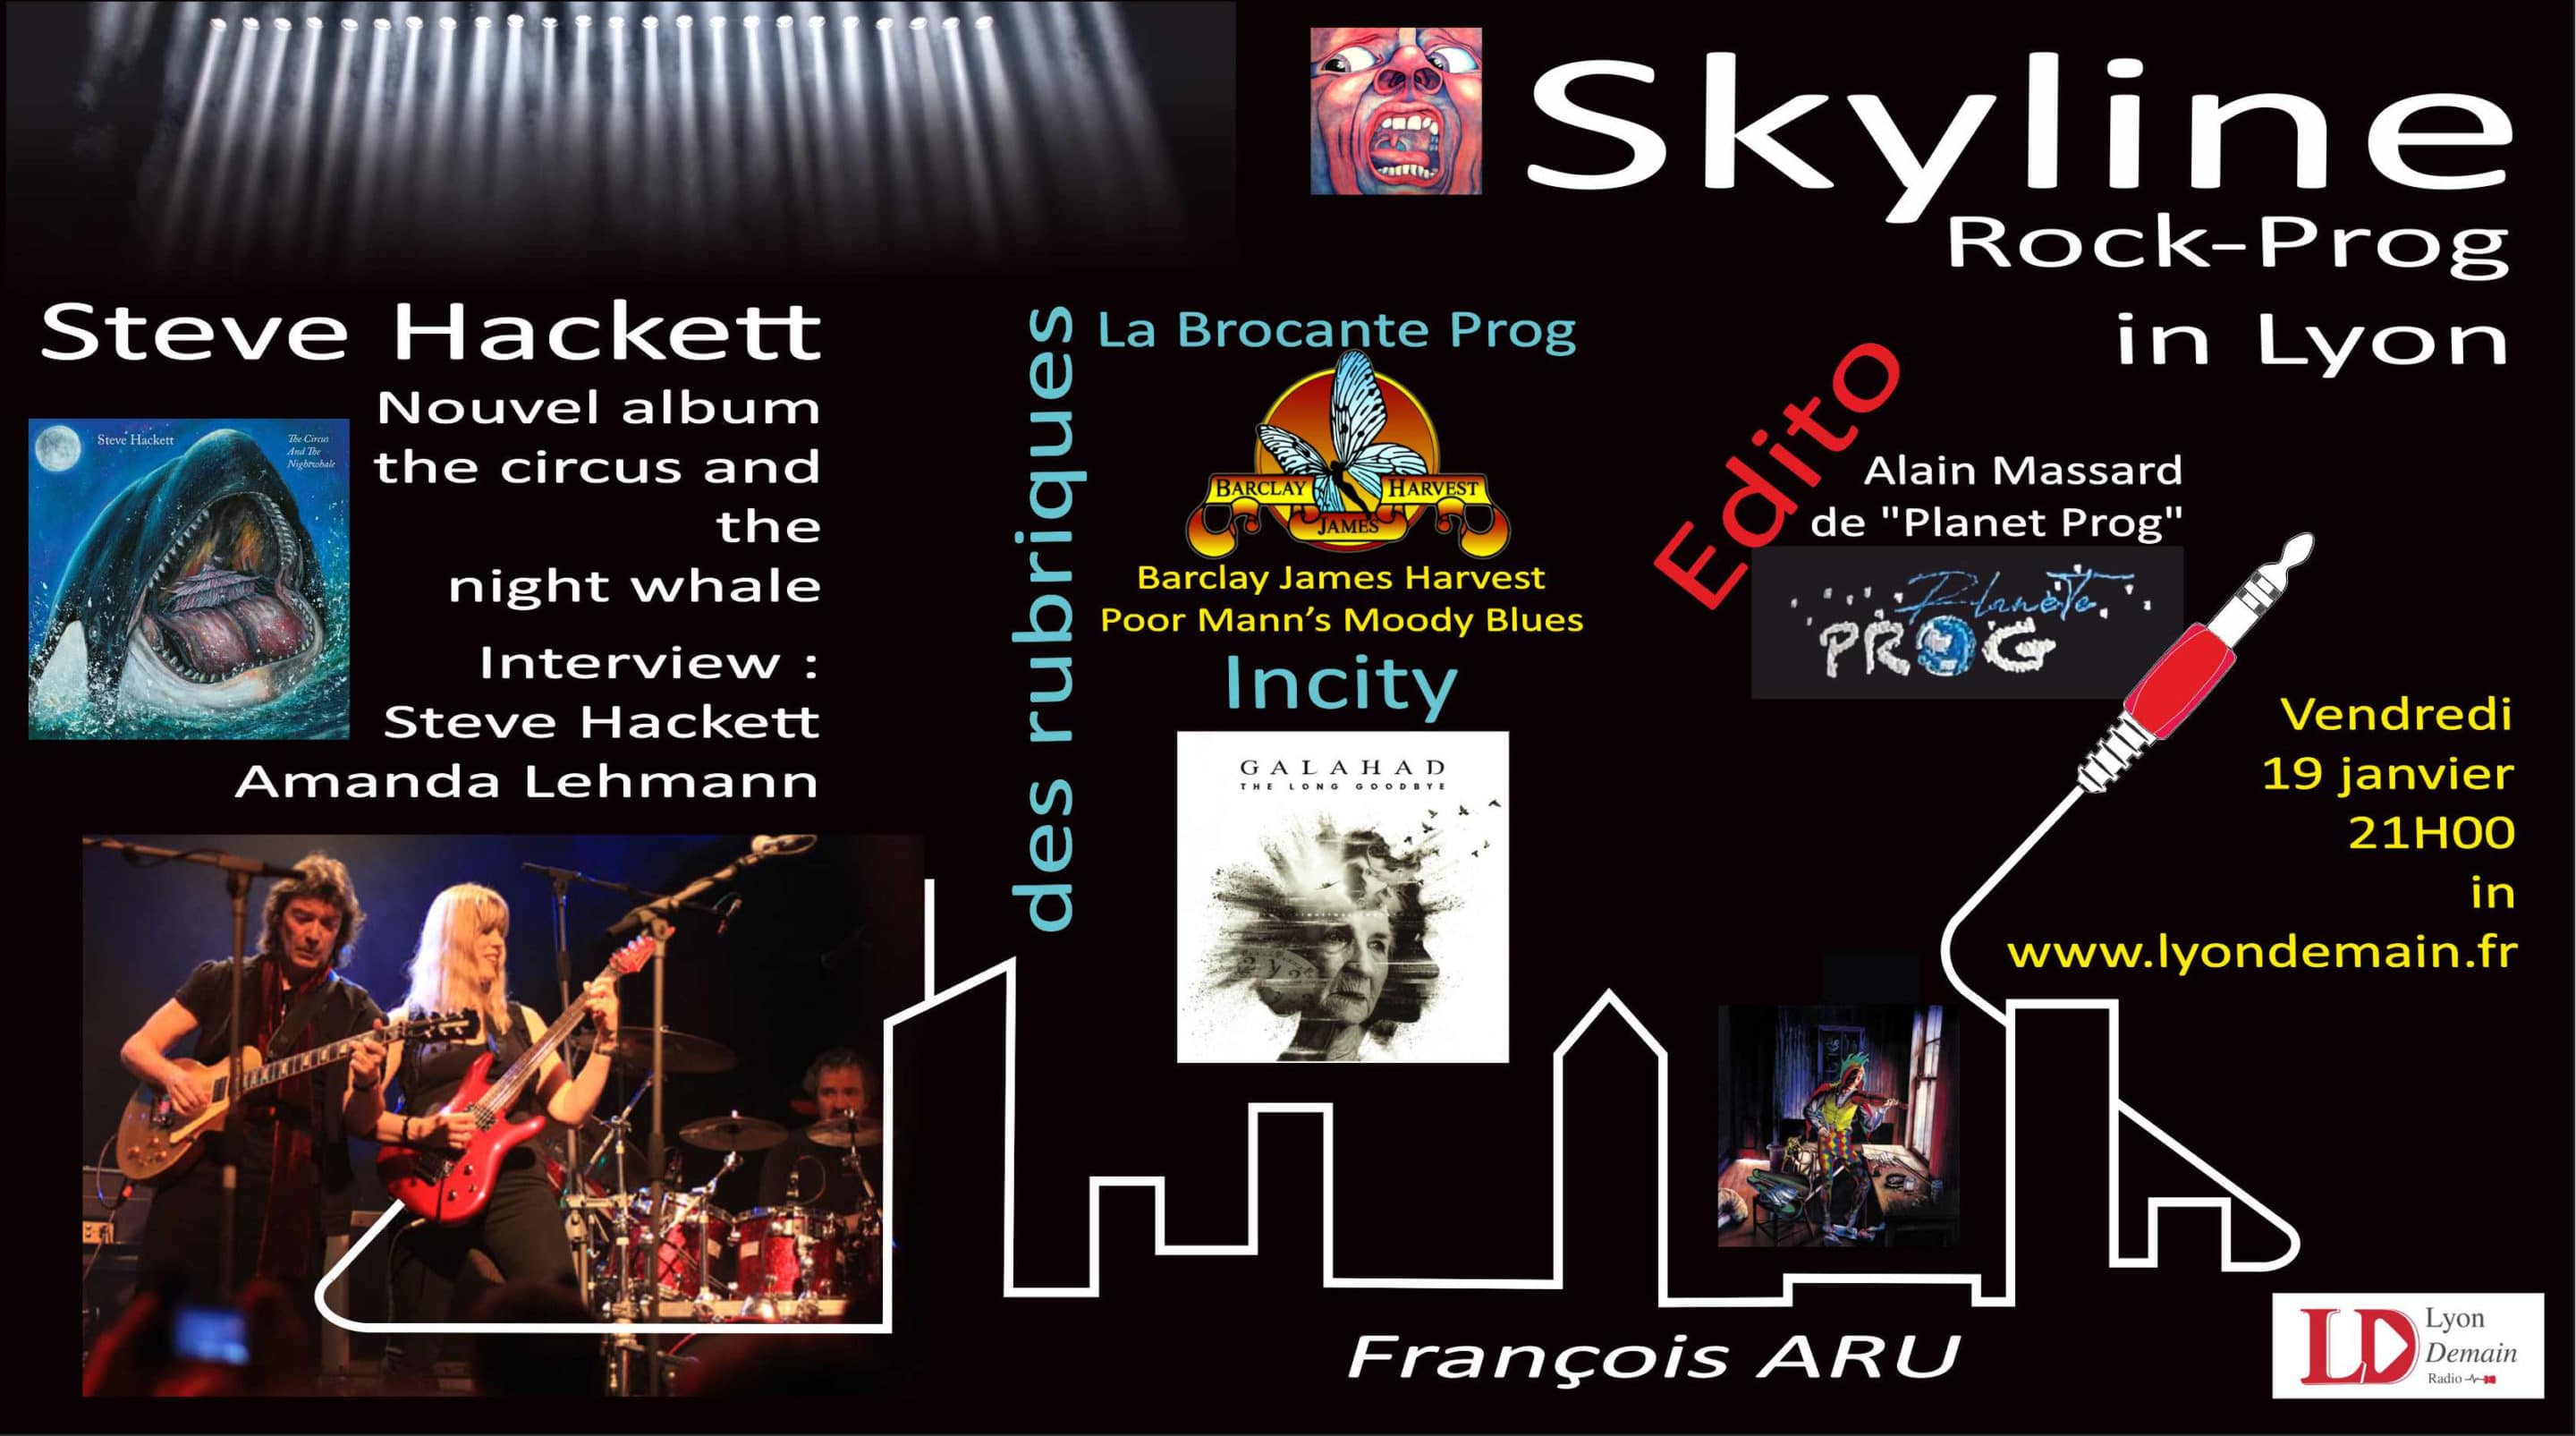 Skyline Rock Prog in Lyon